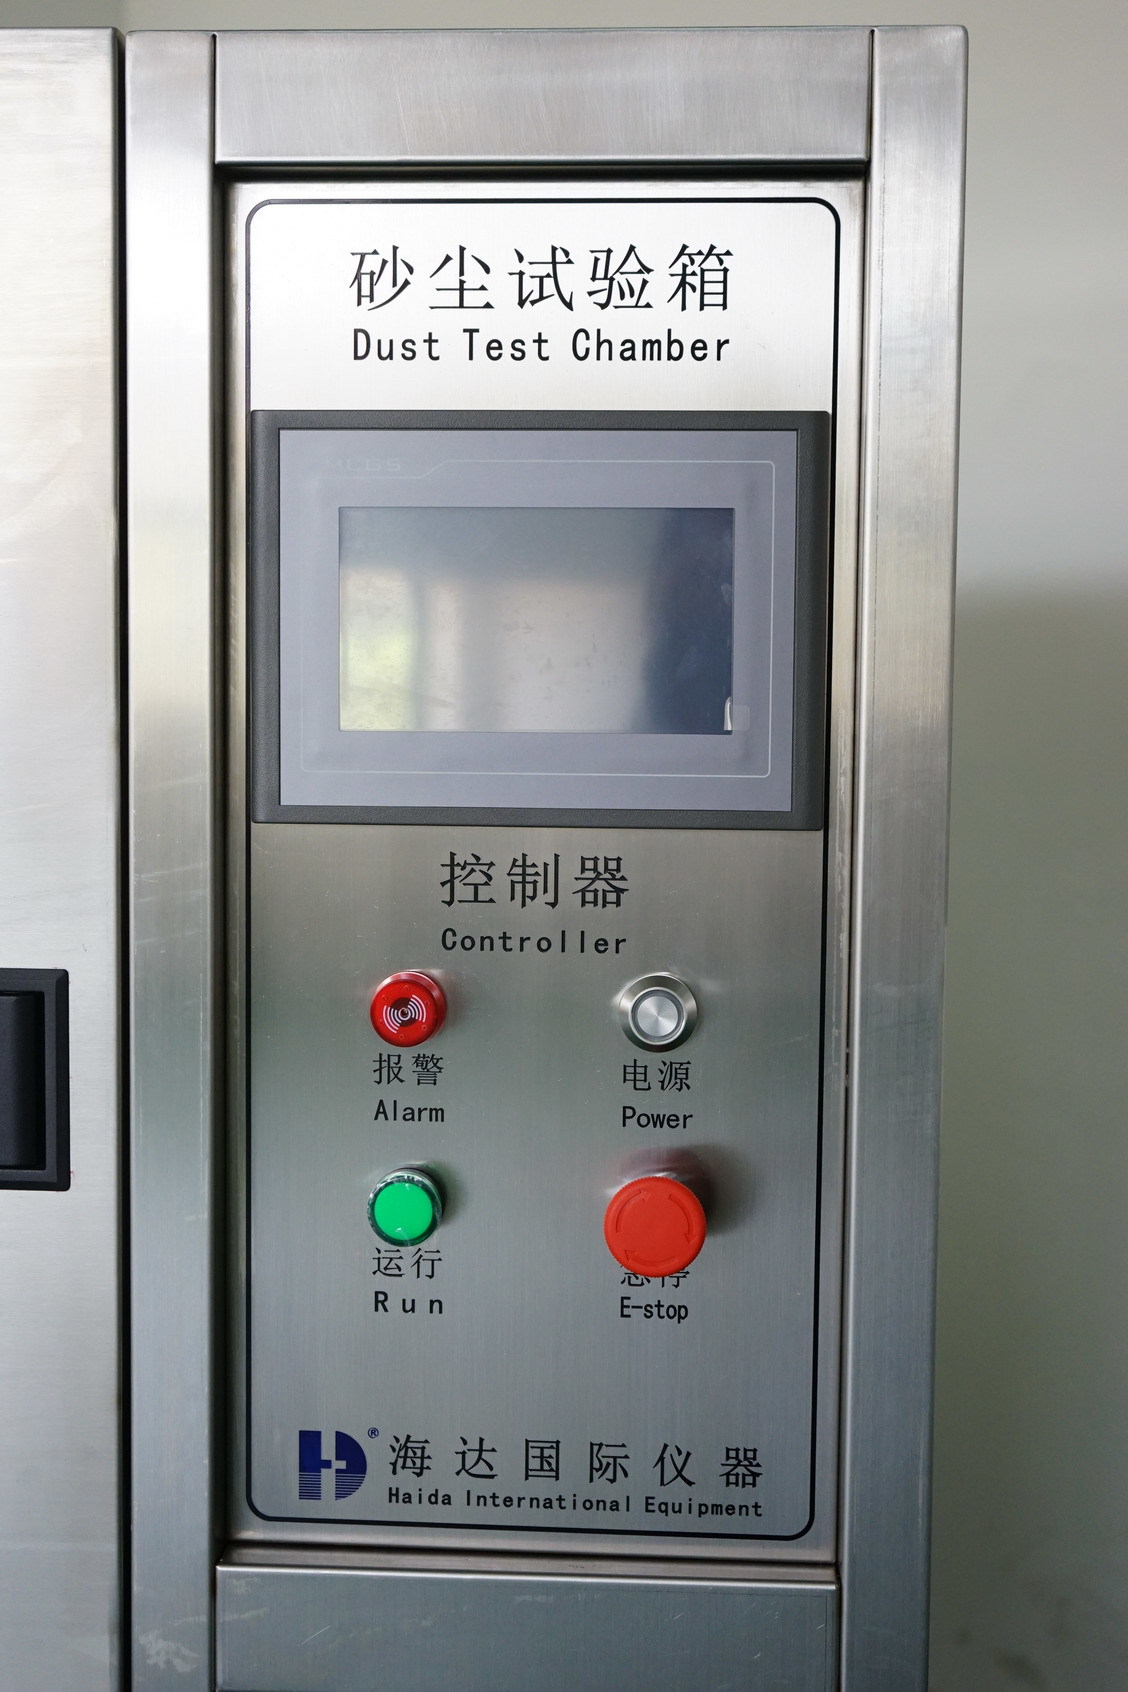 Led Dust Test Chamber